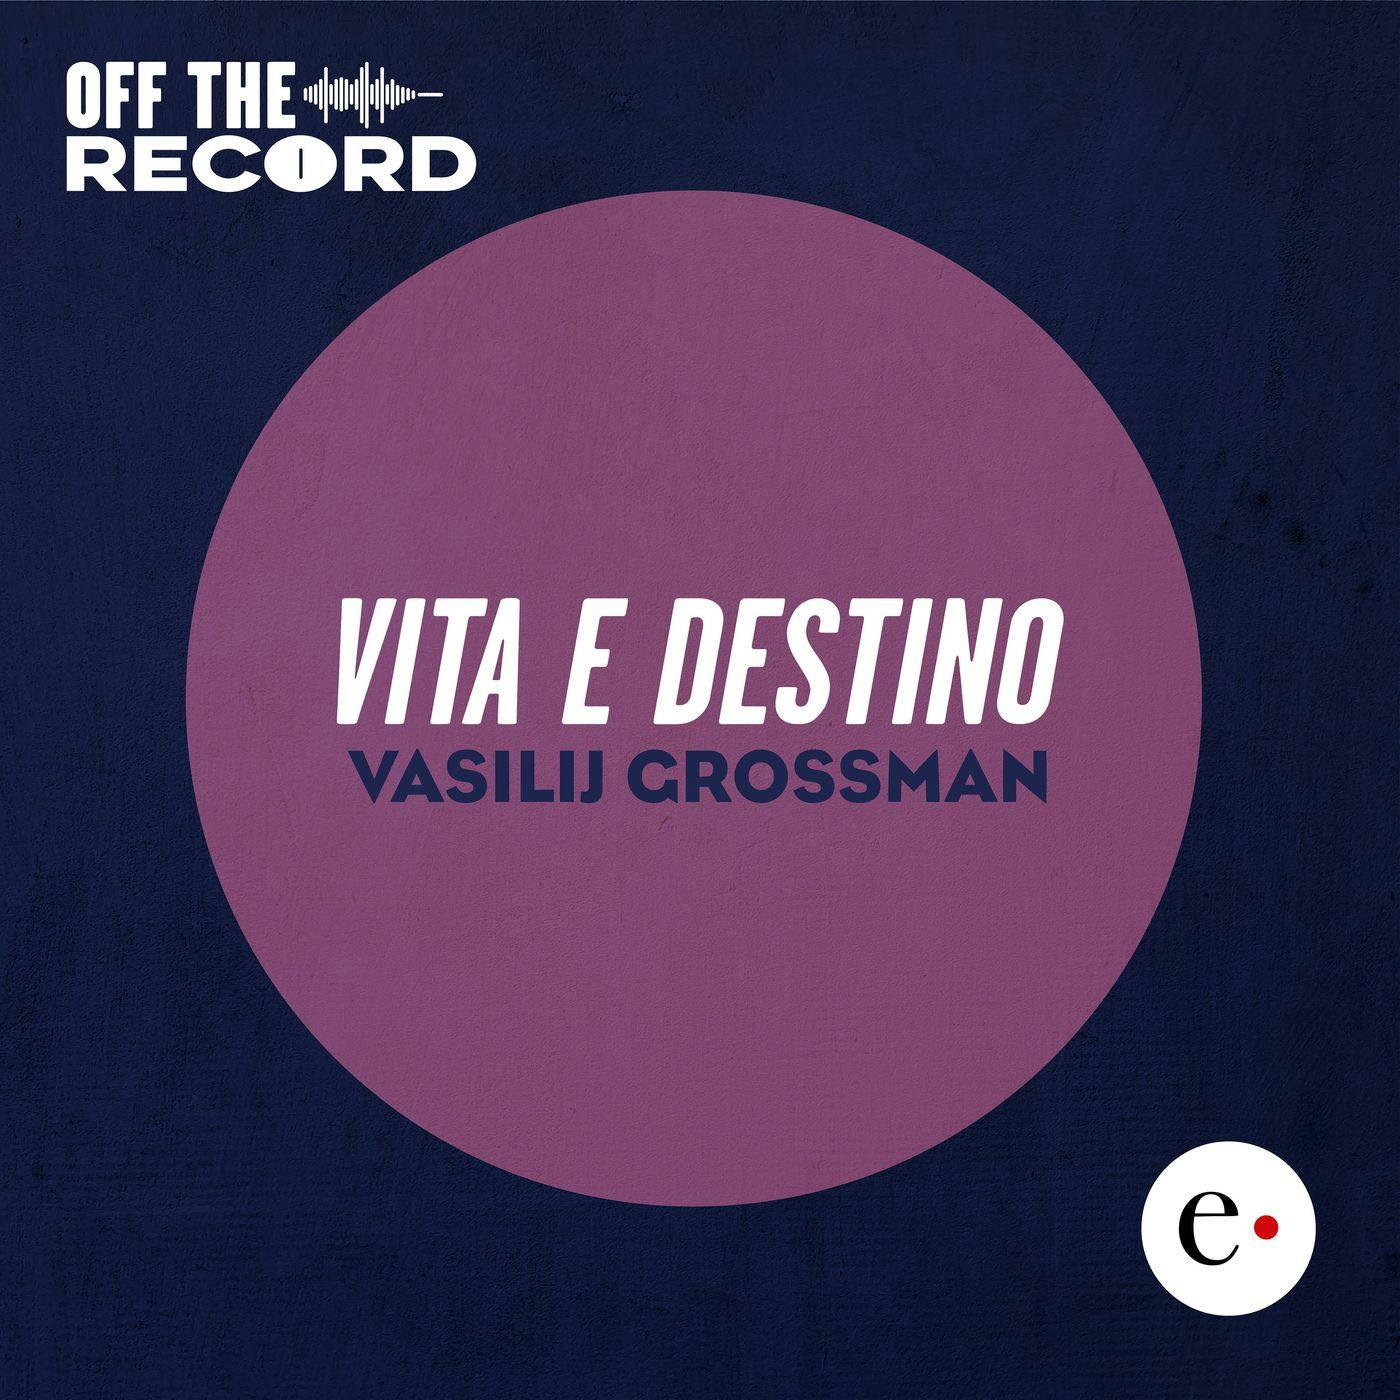 Off The Record - "Vita e destino" di Vasilij Grossman